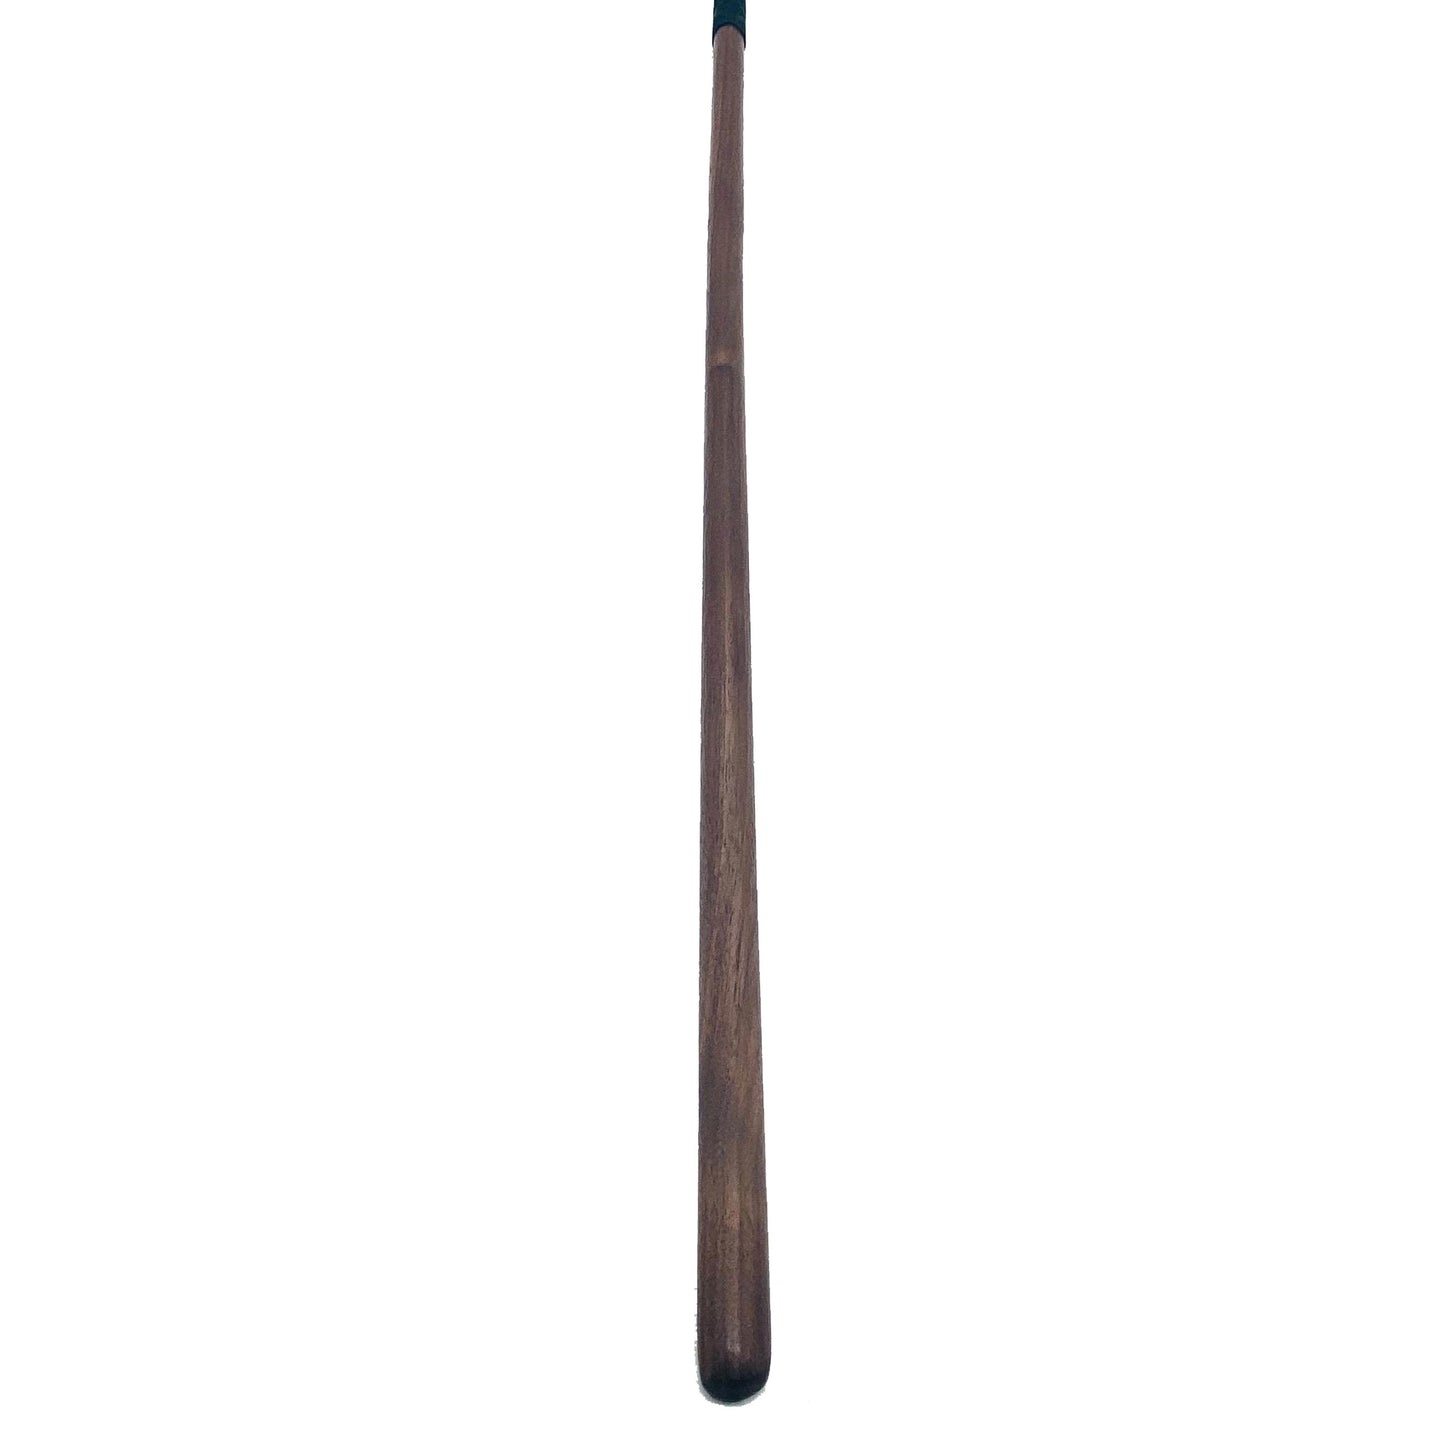 Hardwood Spanking Cane, Hardwood Cane, wood, wood cane, wooden, evil stick, spanking cane, cane, bdsm, impact, punishment, discipline